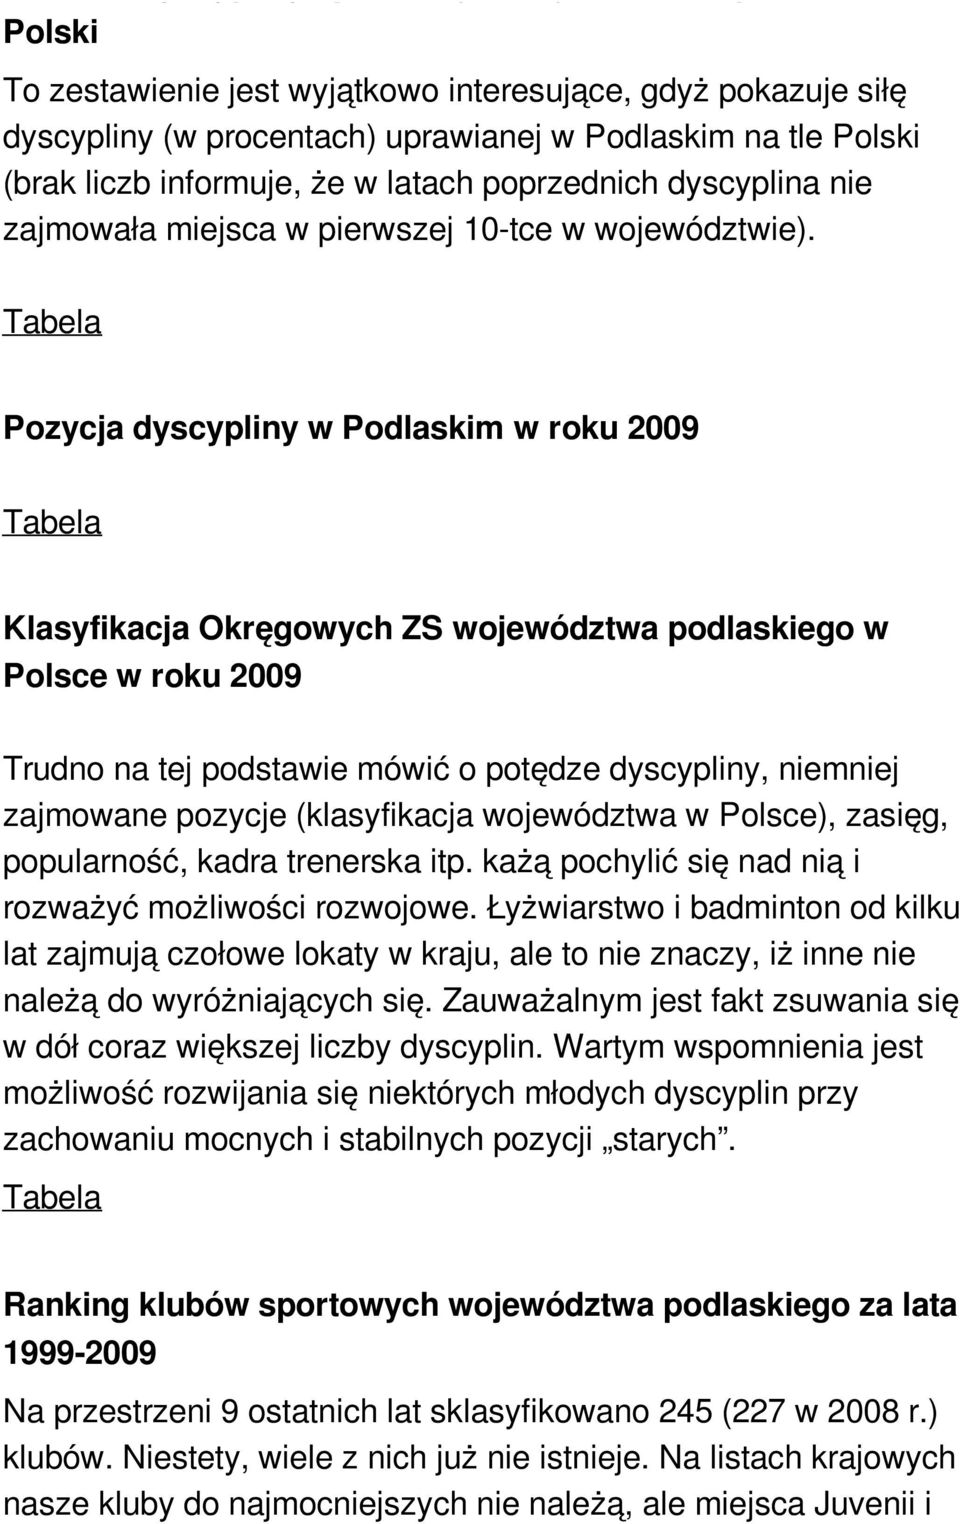 Pozycja dyscypliny w Podlaskim w roku 2009 Klasyfikacja Okręgowych ZS województwa podlaskiego w Polsce w roku 2009 Trudno na tej podstawie mówić o potędze dyscypliny, niemniej zajmowane pozycje